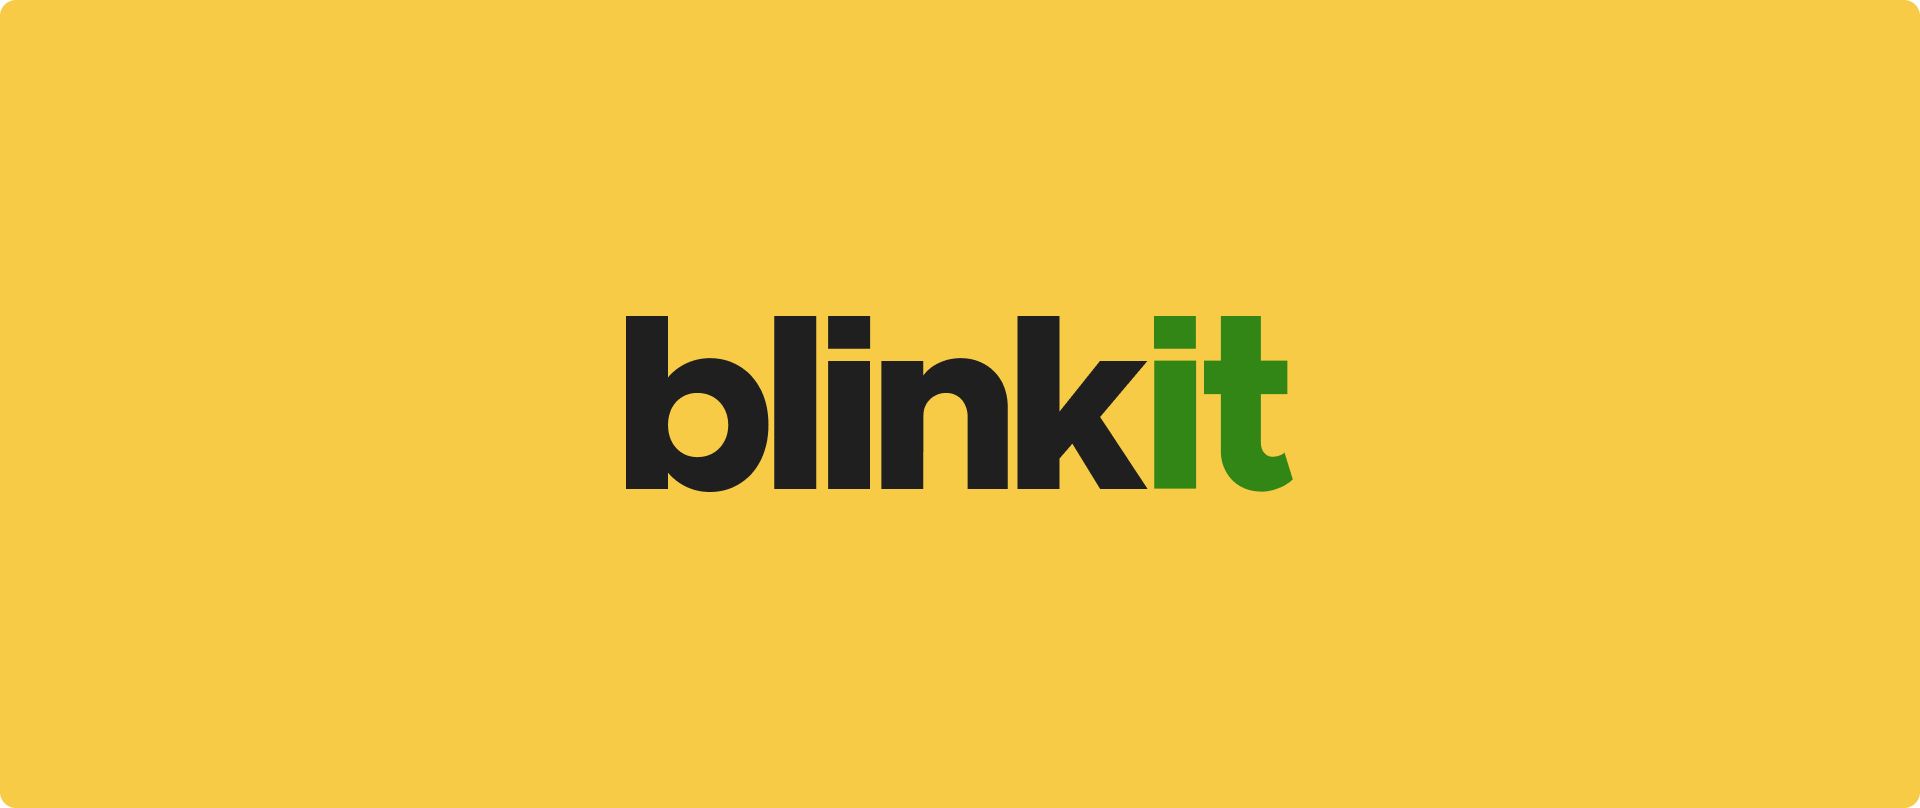 Blinkit không hoạt động phải không? Khám phá các mẹo khắc phục sự cố và tìm giải pháp thay thế Blinkit tốt nhất để mua hàng tạp hóa liền mạch. Hãy trở lại đúng hướng ngay hôm nay!